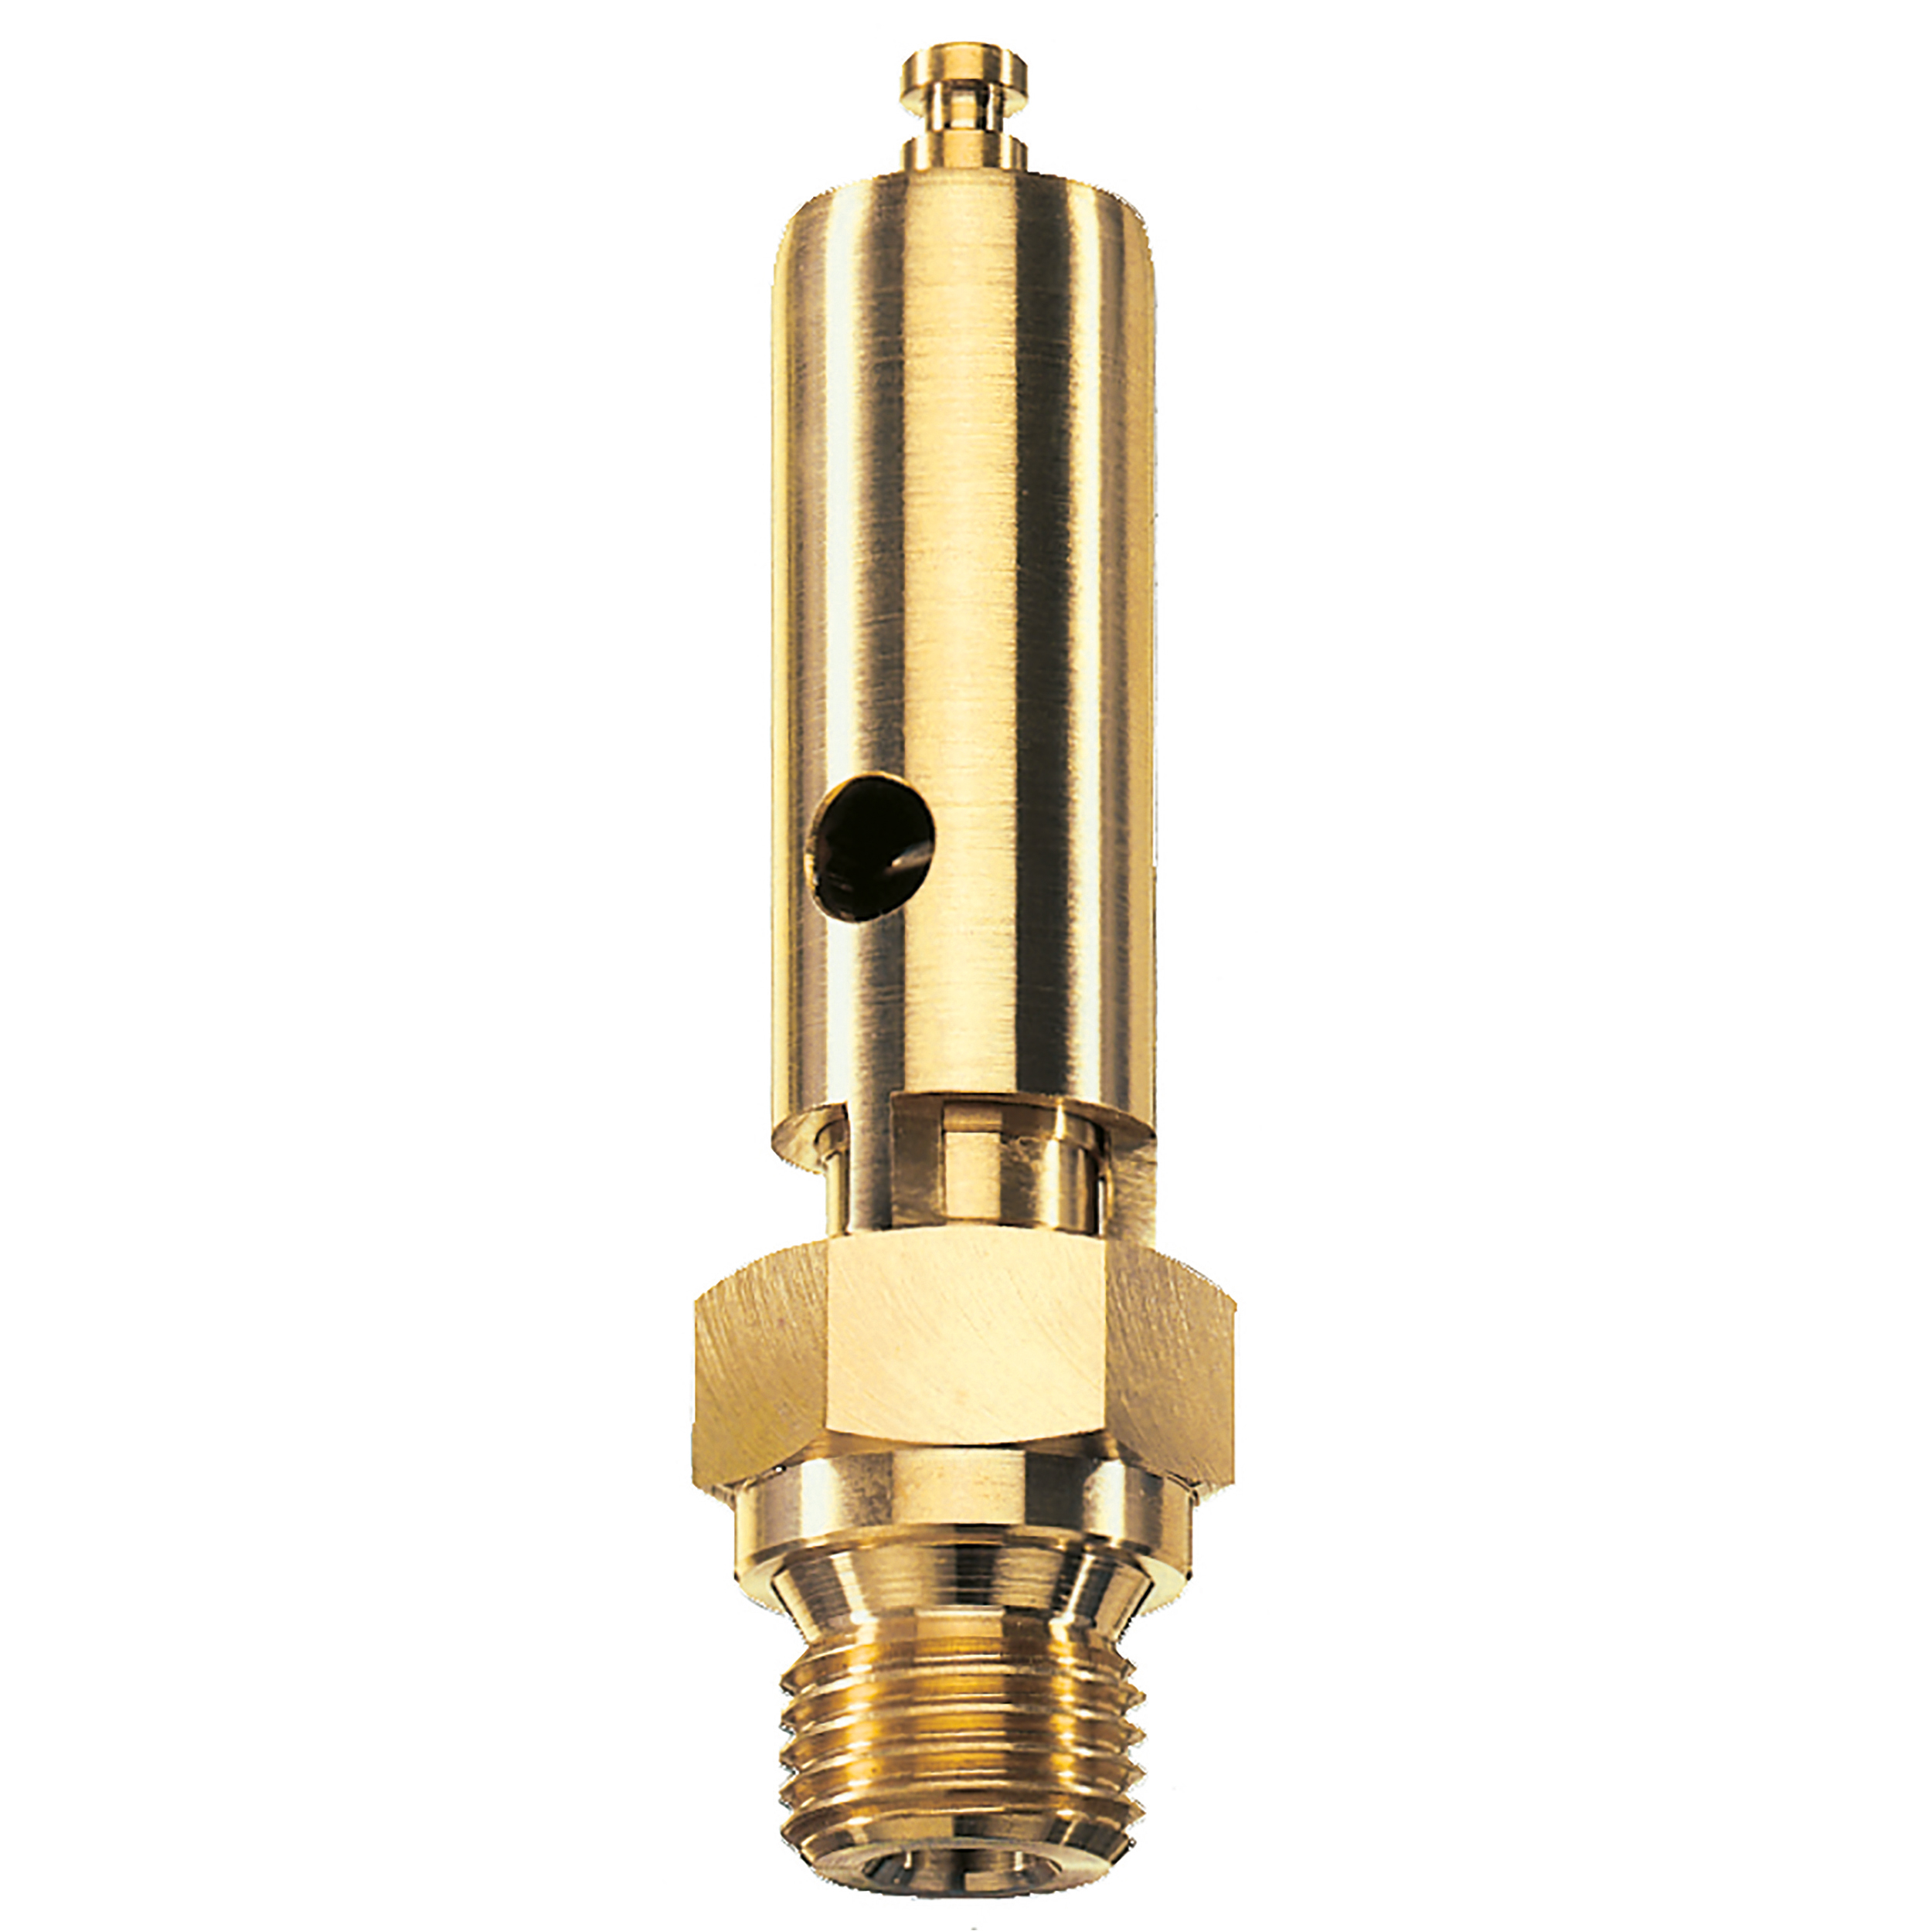 Savety valve component tested DN 6, G⅜, L: 60 mm, seal: FKM, set pressure: 15.6 bar (226,2 psi), TÜV approval